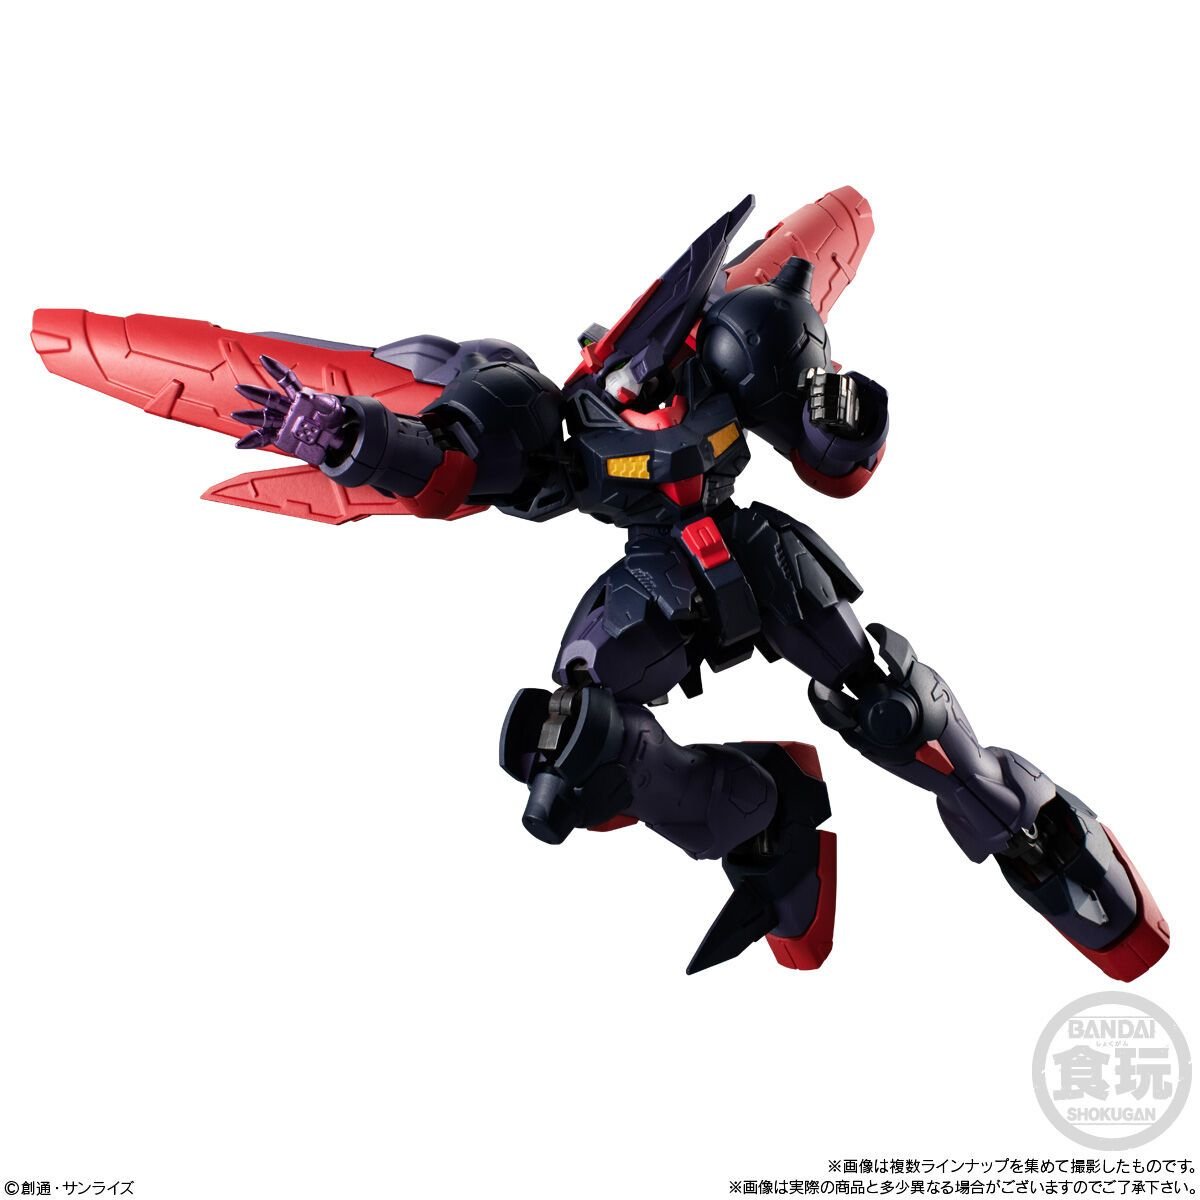  Đồ Chơi Combo Mô Hình Mobile Suit Gundam G-Frame Fa 05 BANDAI CANDY CB-A2678579-4778 